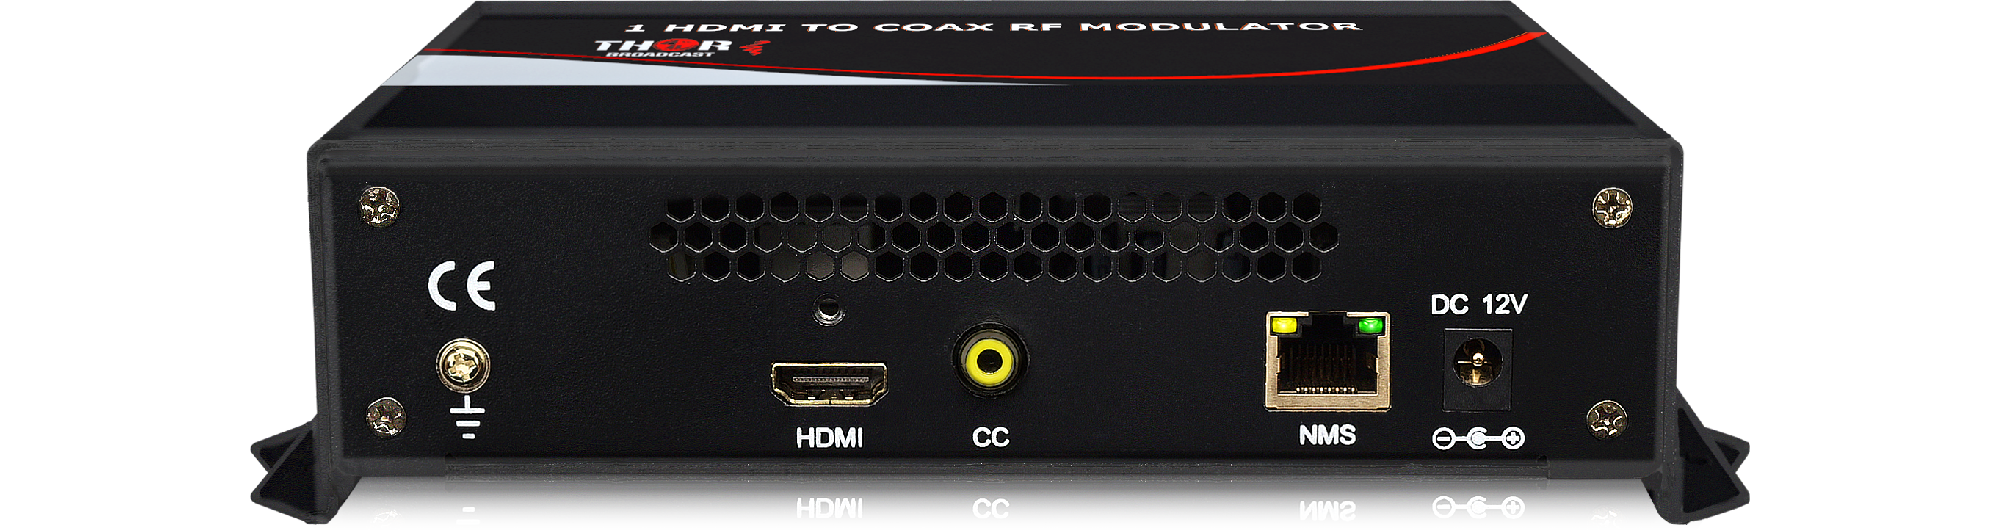 HDMI RF Modulator, Hdtv Rf Modulator